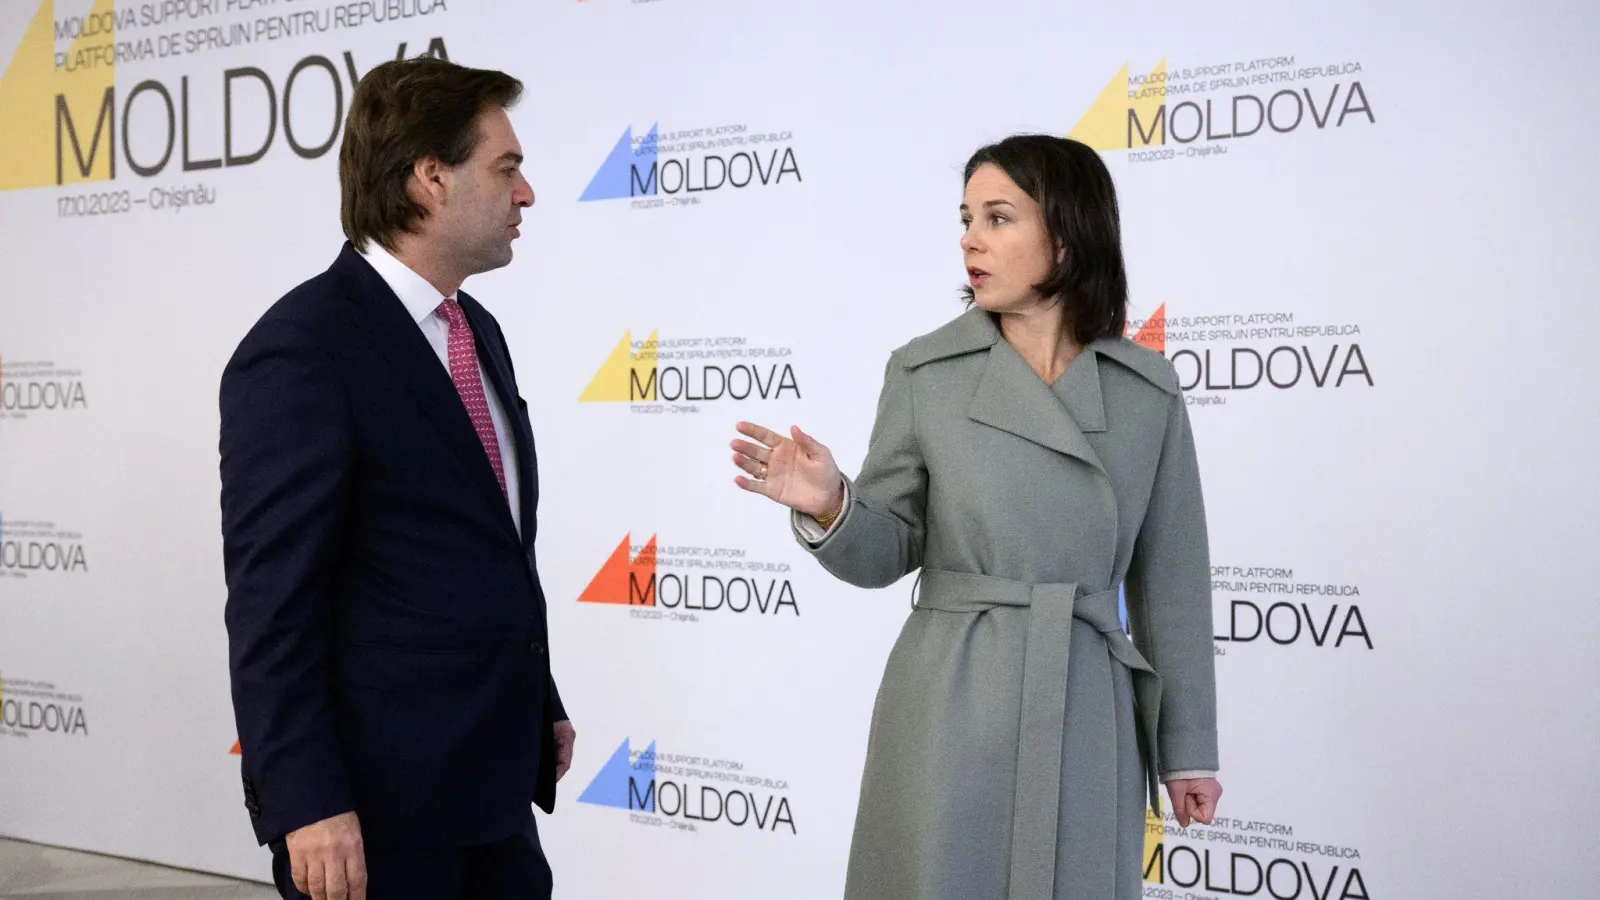 Außenministerin Annalena Baerbock und ihr Amtskollege aus der Republik Moldau, Nicu Popescu, bei der Konferenz der Moldau-Unterstützungsplattform im Palast der Republik in Chisinau. (Foto: Bernd von Jutrczenka/dpa)